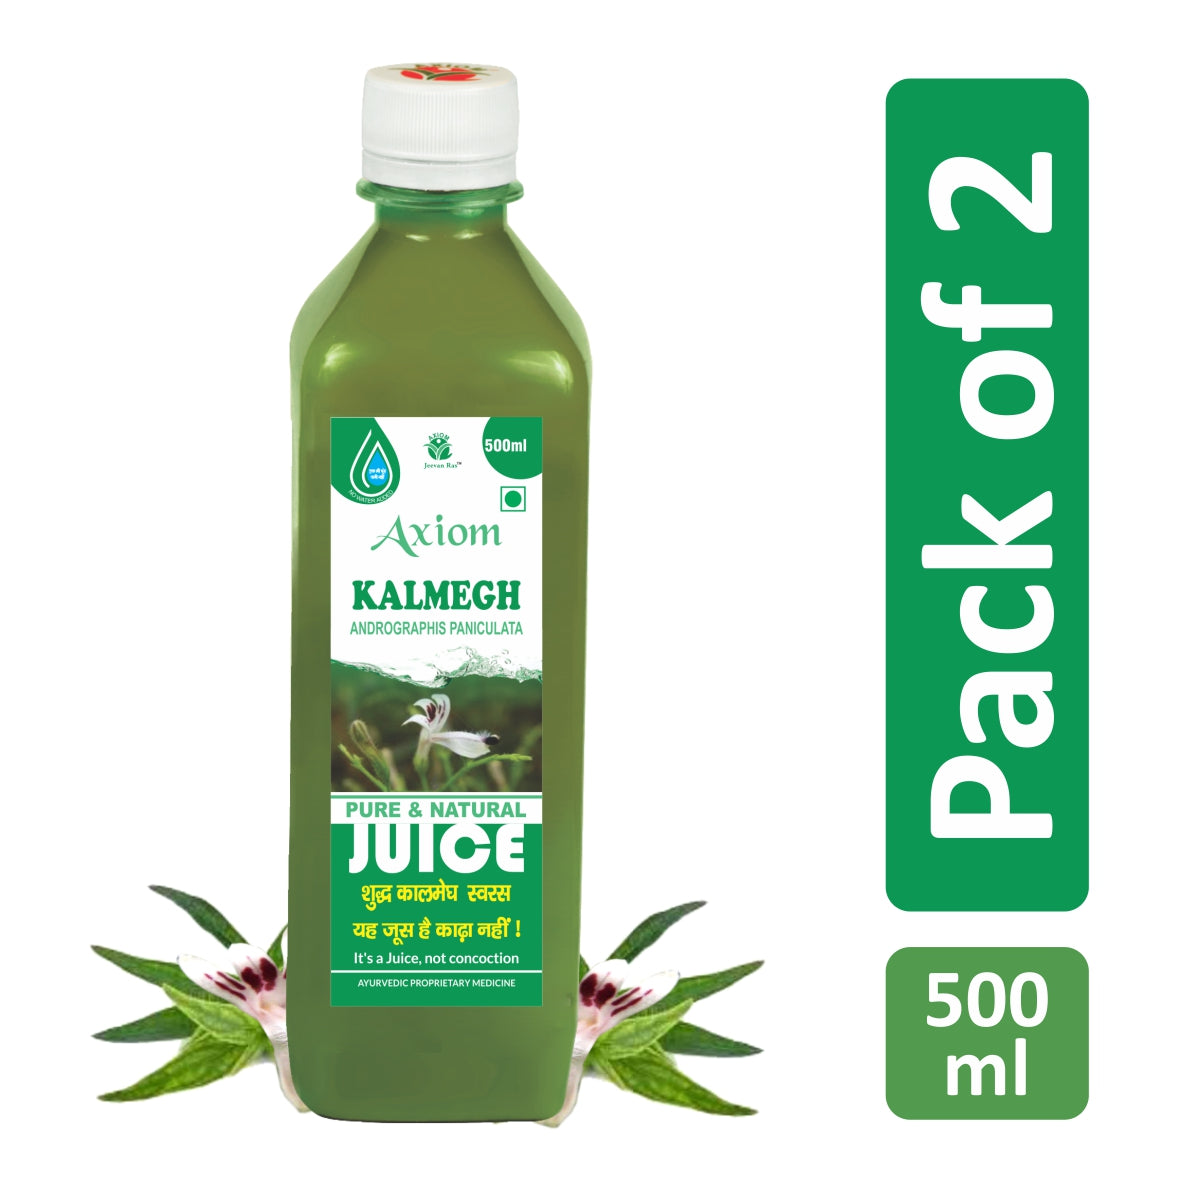 Jeevan Ras Axiom Kalmegh Juice 500ml (Pack of 2)